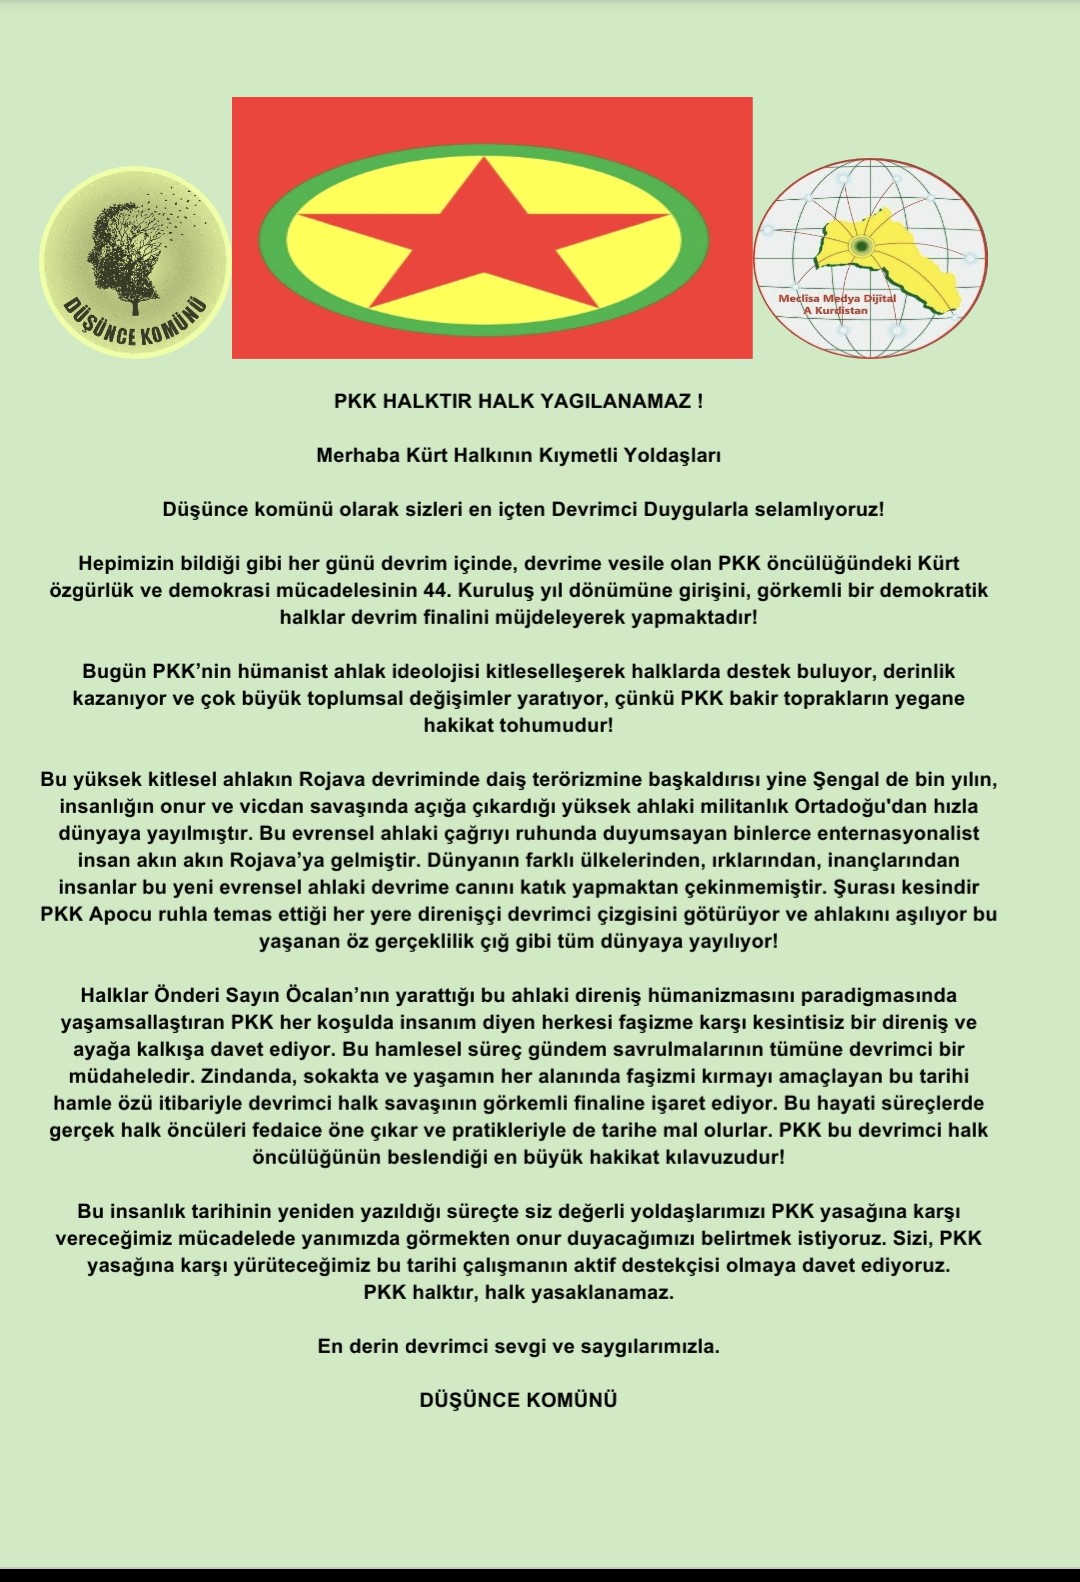 PKK HALKTIR HALK YAGILANAMAZ !